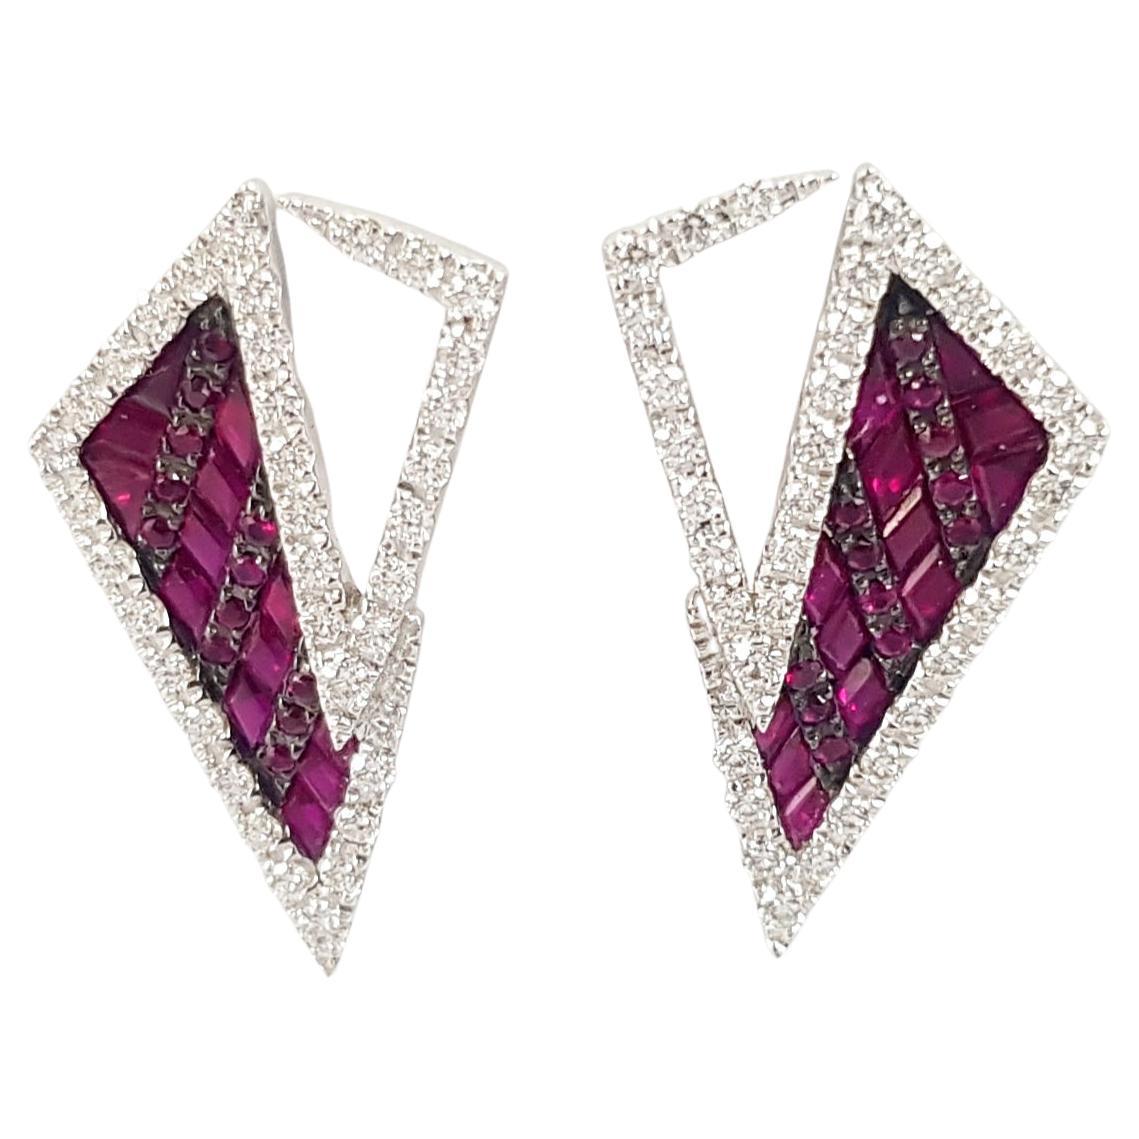 Kavant & Sharart Origami Ruby, Diamond Earrings 18K White Gold For Sale